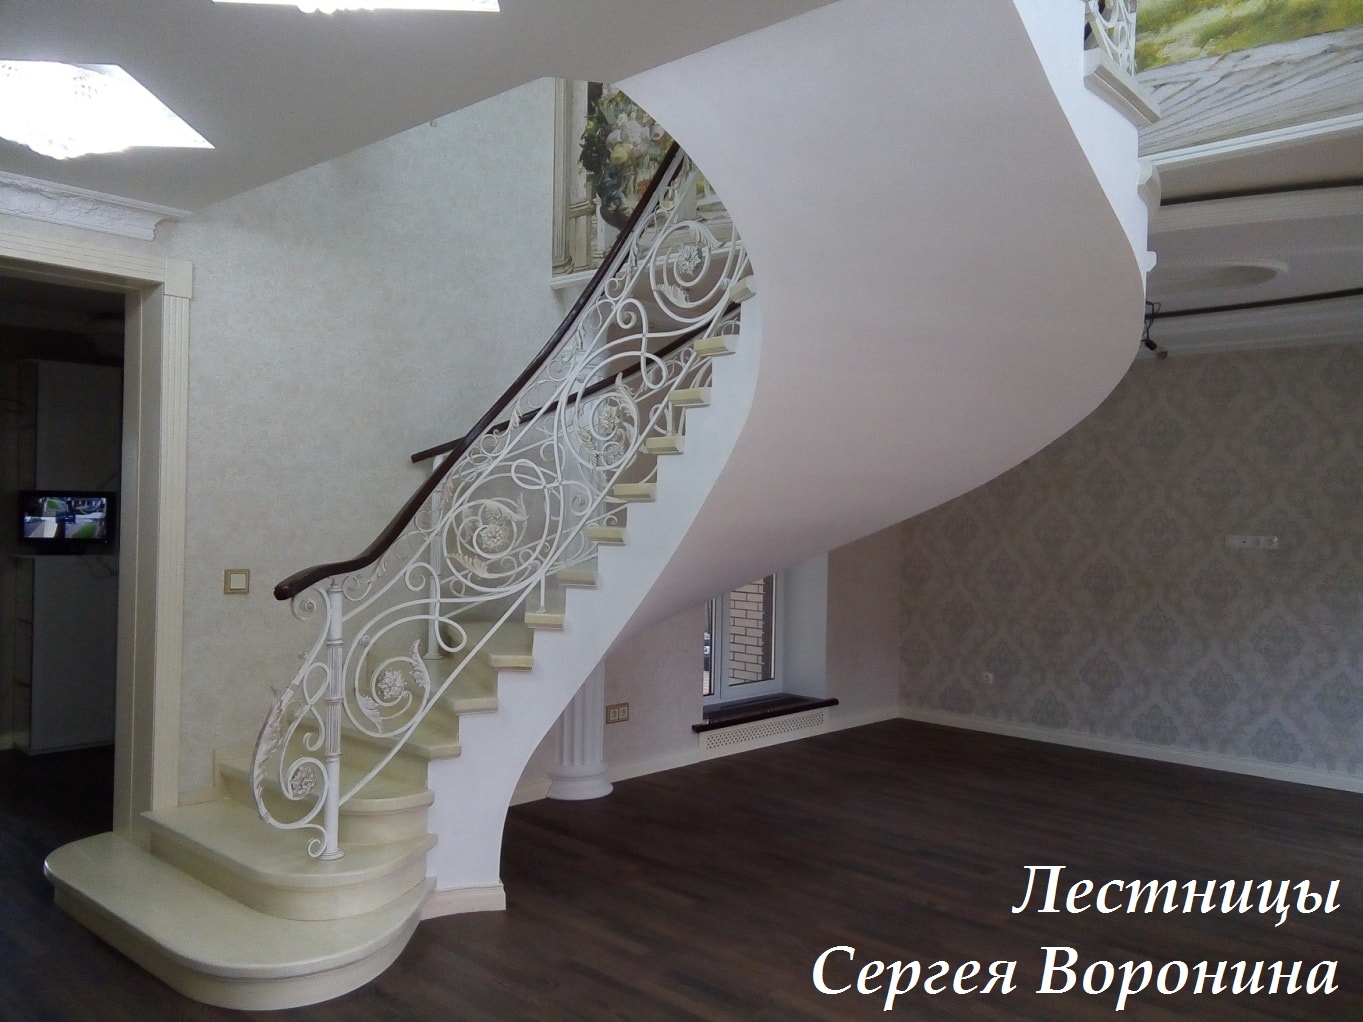 Лестница в частном доме бетонная, 2018 год, автор Сергей Воронин, Воронеж